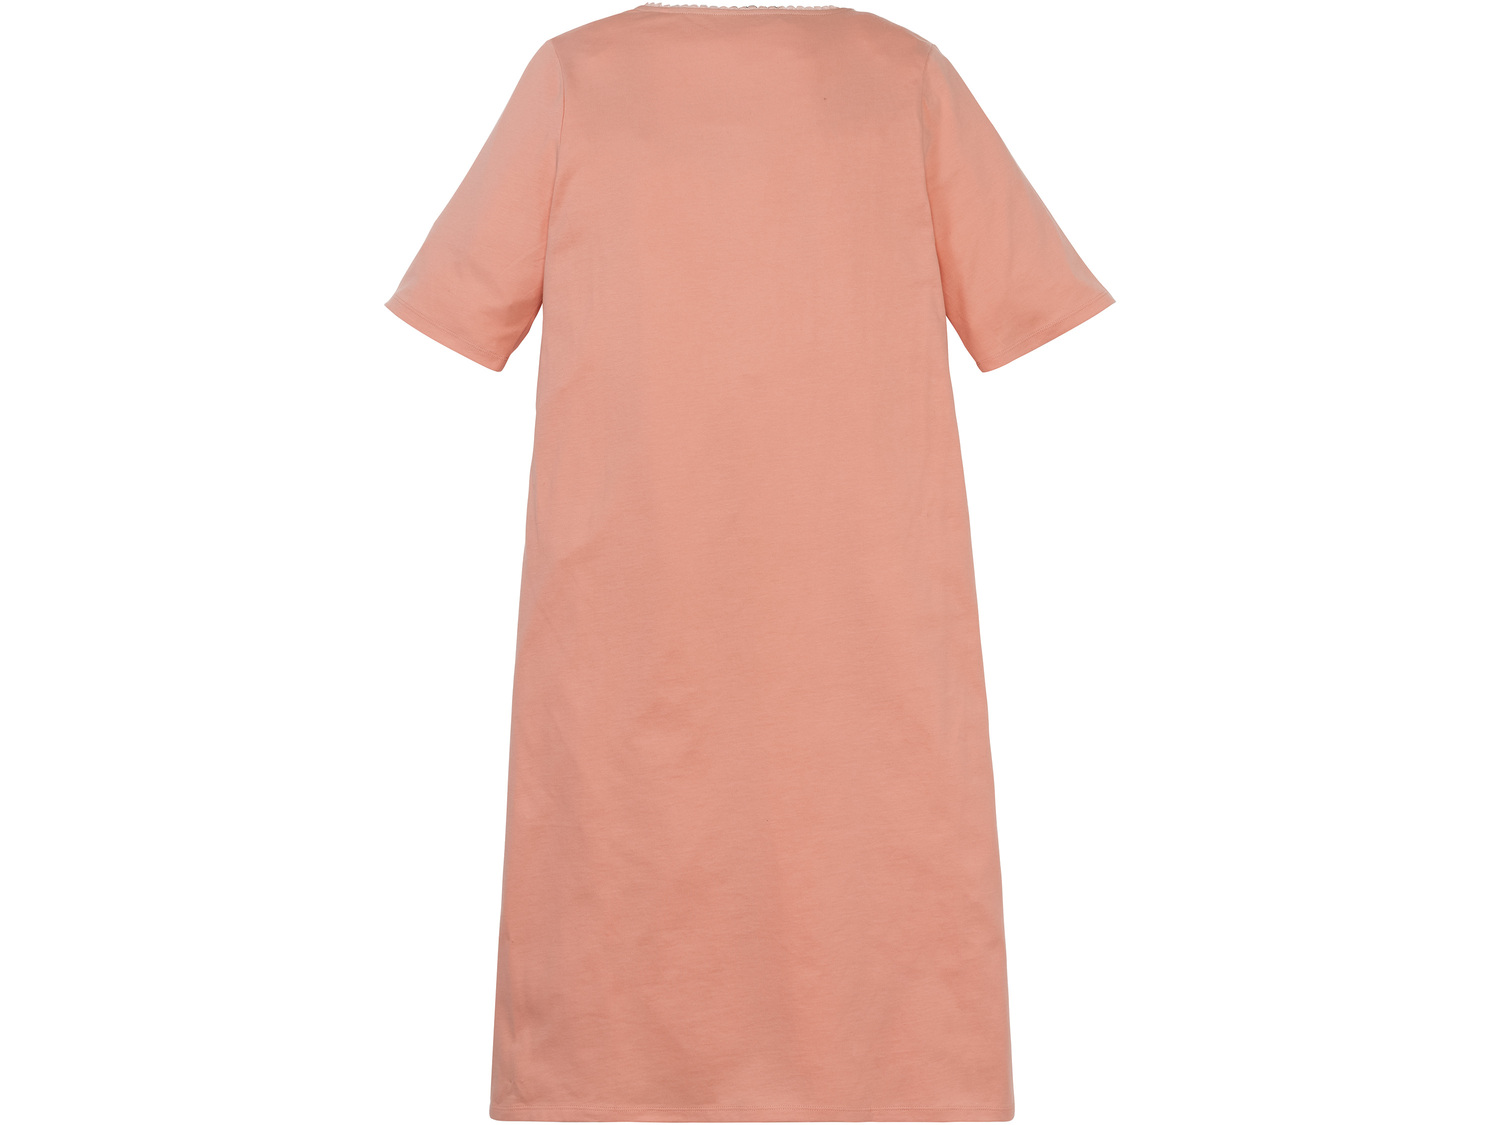 Koszula nocna Esmara Lingerie, cena 29,99 PLN 
- 100% bawełny
- rozmiary: S-L
- ...